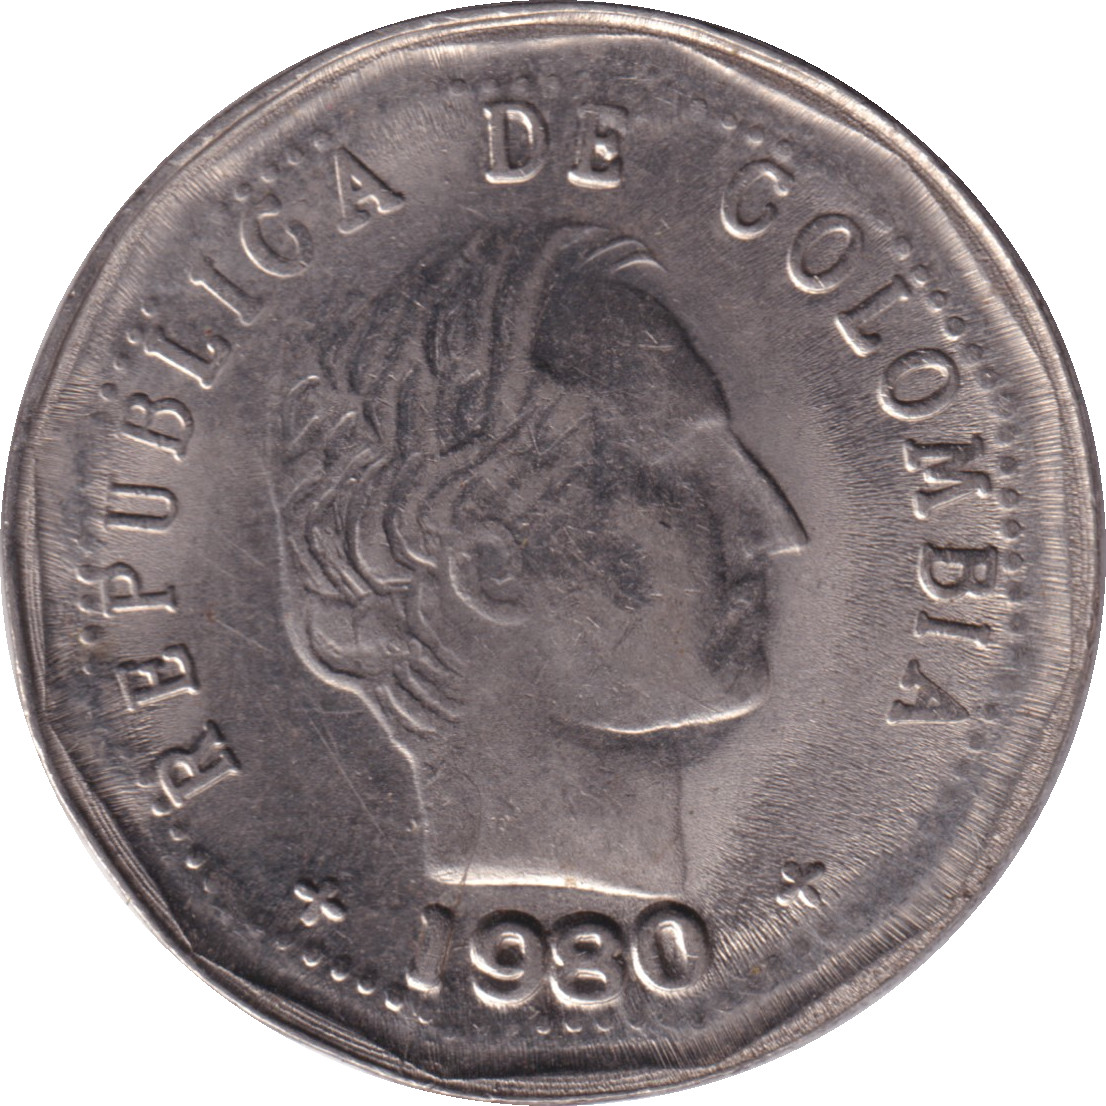 50 centavos - Santander - Polygonale